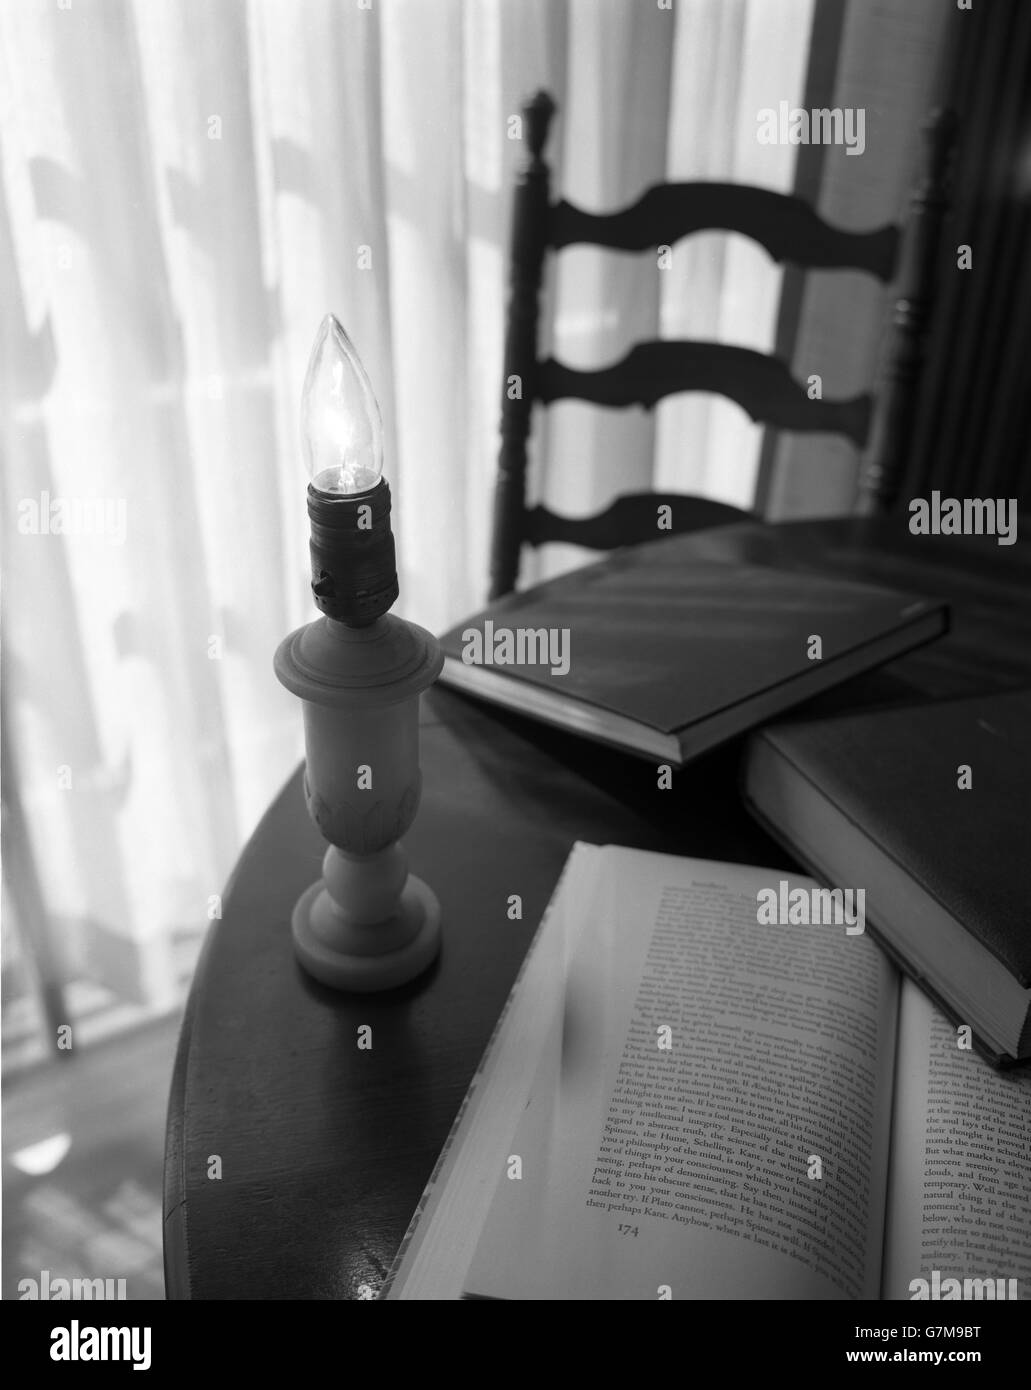 Lampada con nessuna ombra con un bulbo di fiamma su un tavolo. Un libro aperto e due libri chiusi sono anche sul tavolo. Foto Stock